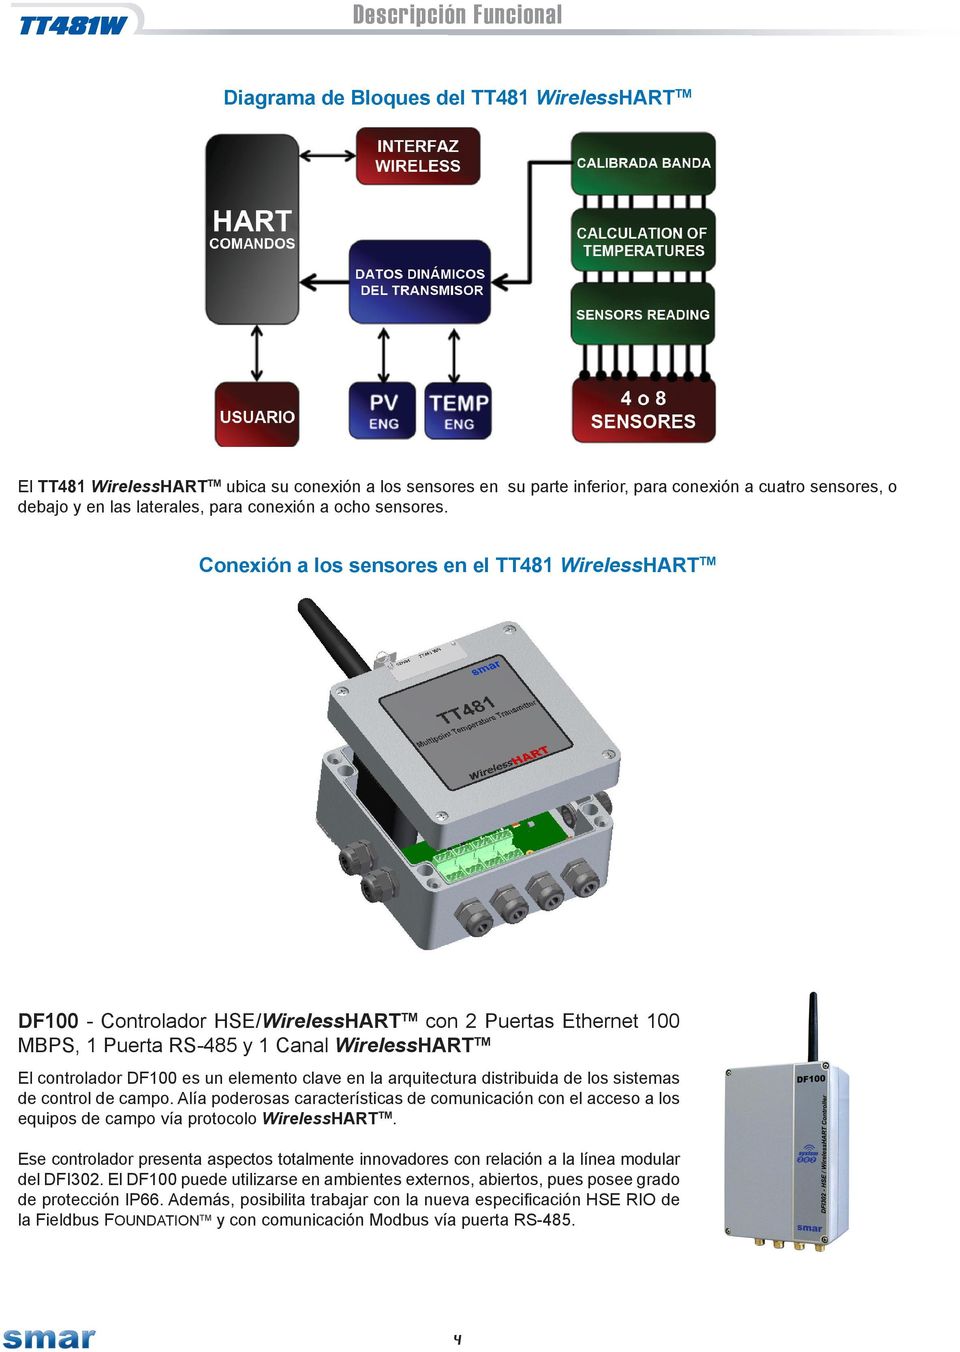 onexión a los sensores en el TT WirelessRT T 00 - ontrolador S/WirelessRT T con Puertas thernet 00 PS, Puerta RS- y anal WirelessRT T l controlador 00 es un elemento clave en la arquitectura